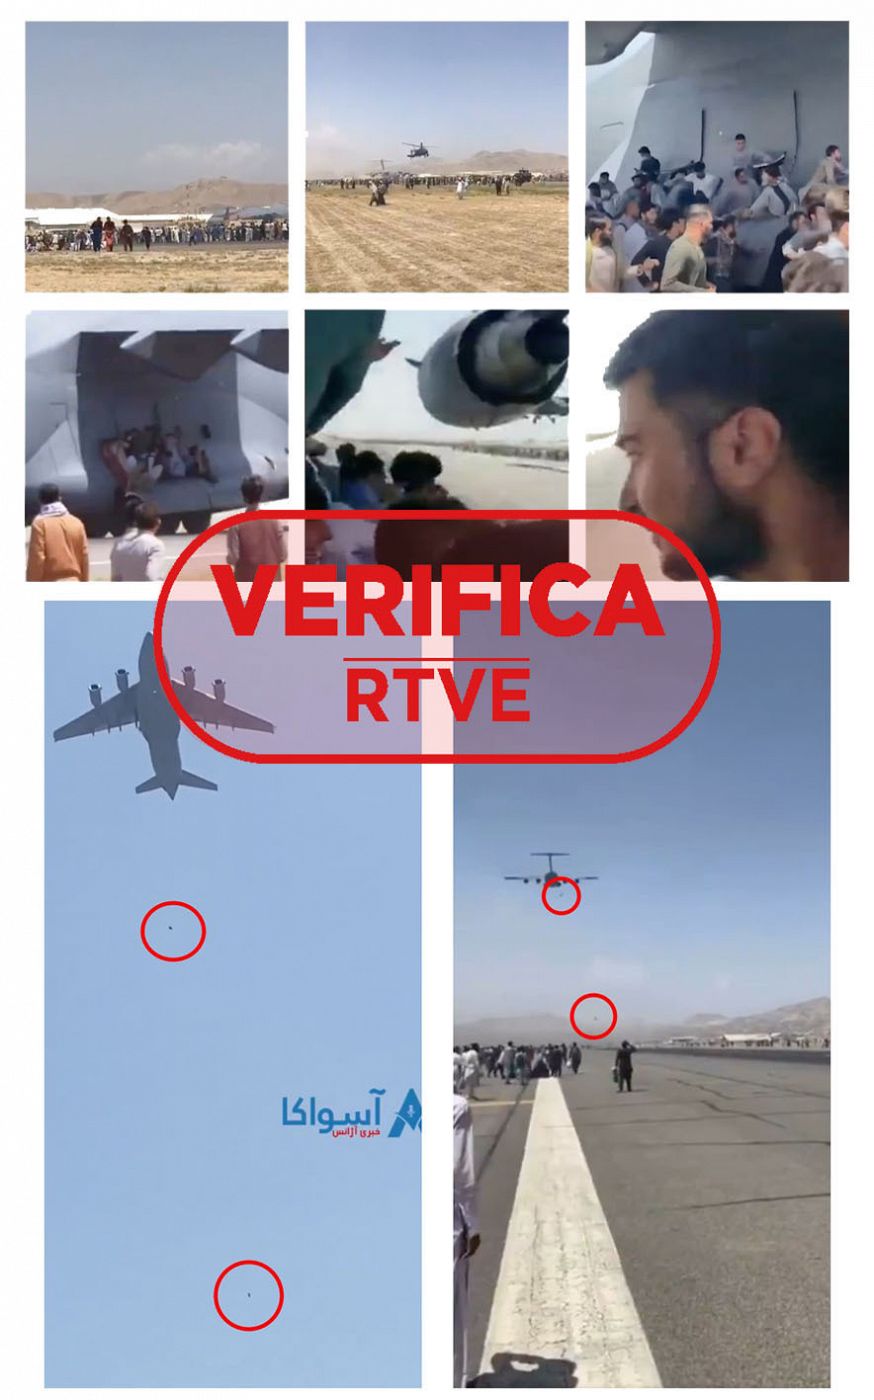 Cronología de afganos subiendo a aviones en el aeropuerto de Kabul con el sello VerificaRTVE